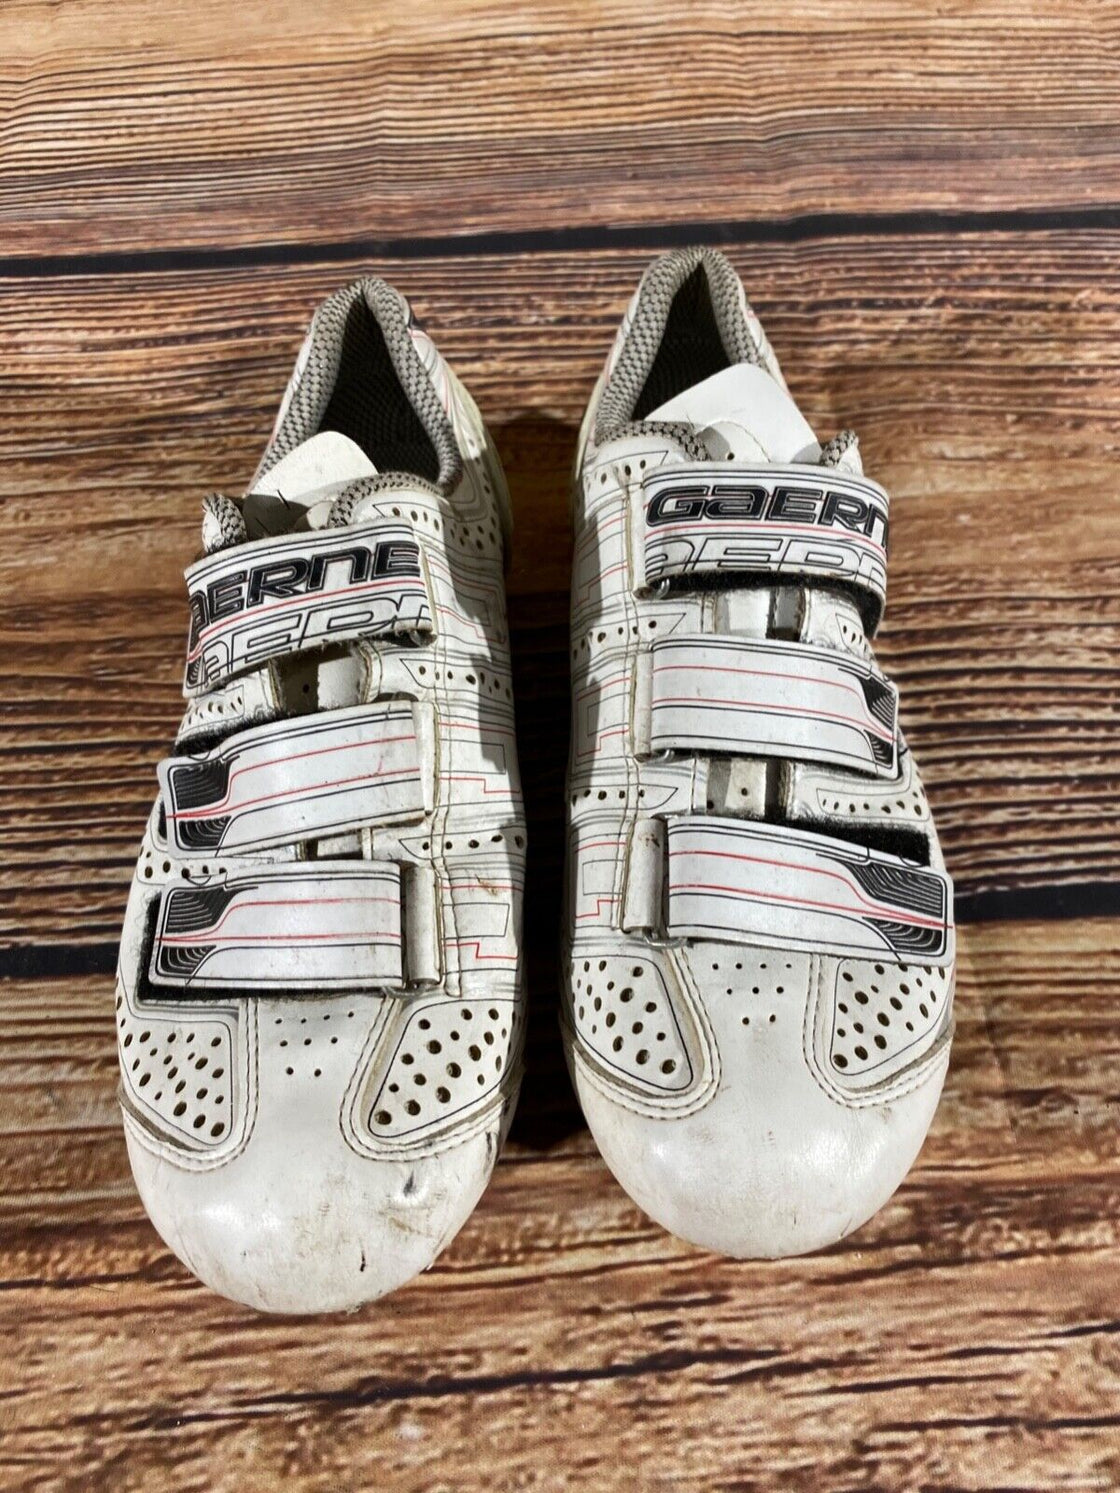 GAERNE Road Cycling Shoes Biking Boots Shoes Size EU42, US8, Mondo 260